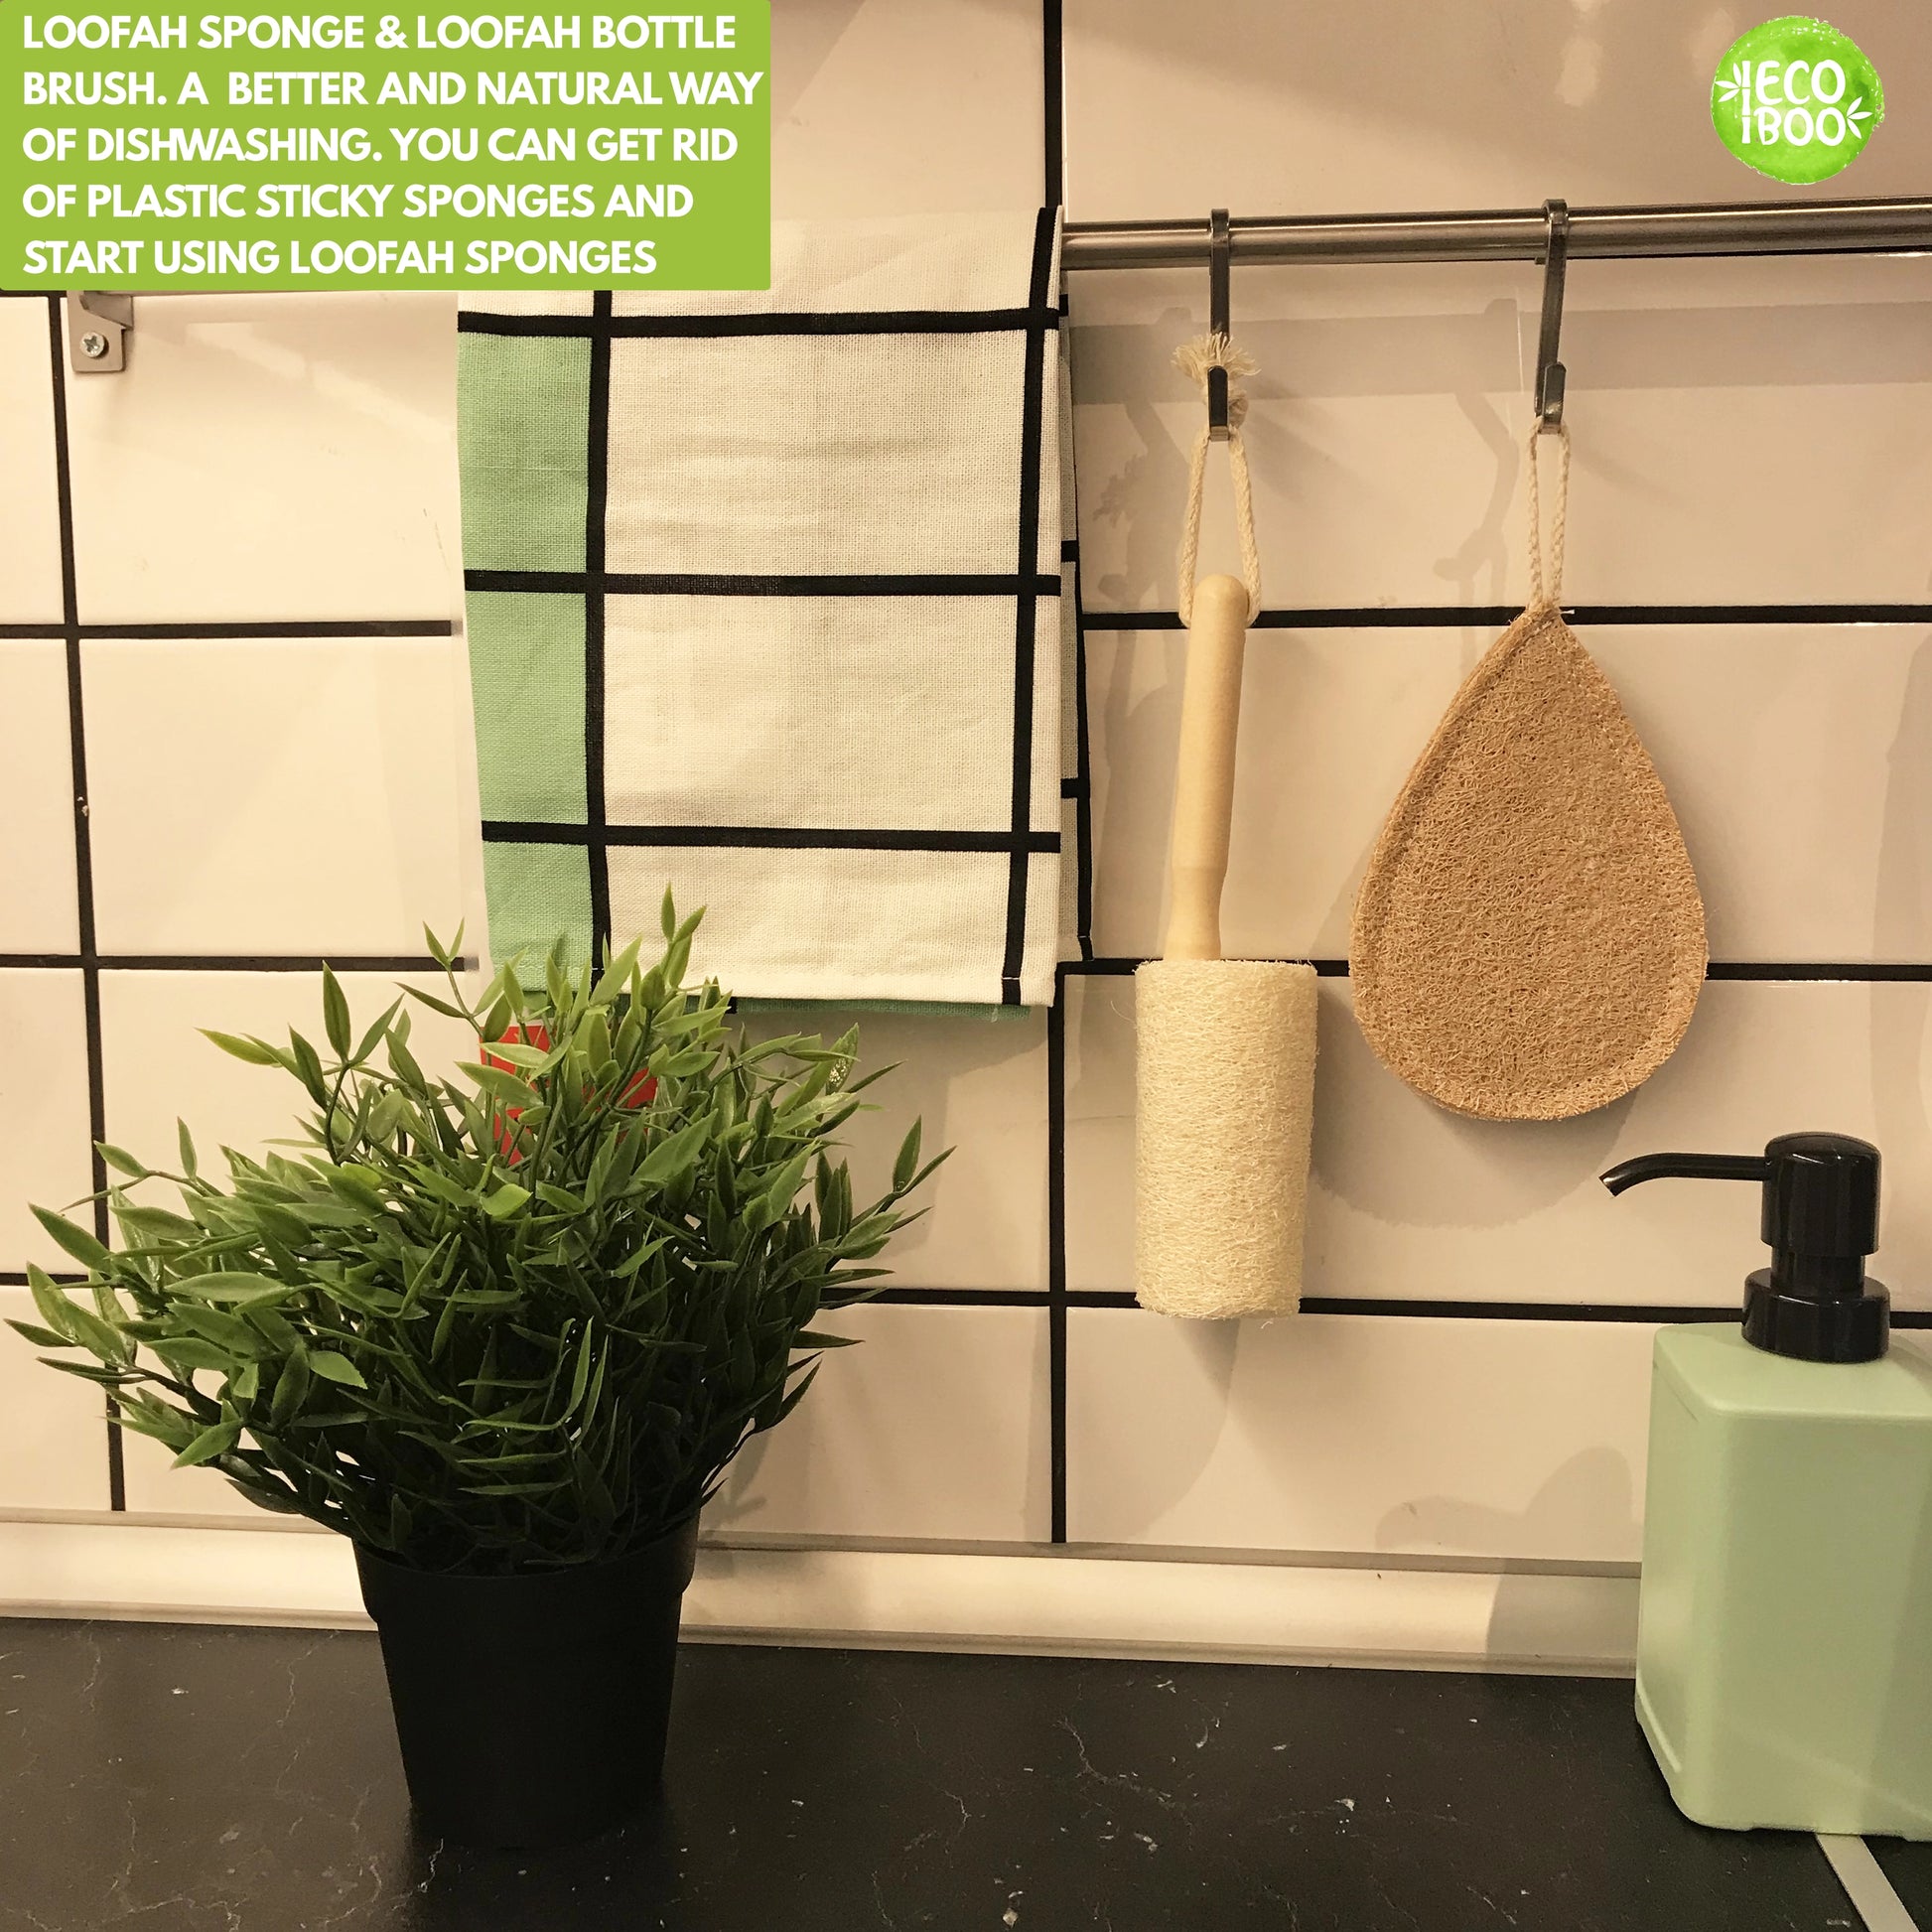 Dish Brush & Holder Set : All Natural Bamboo